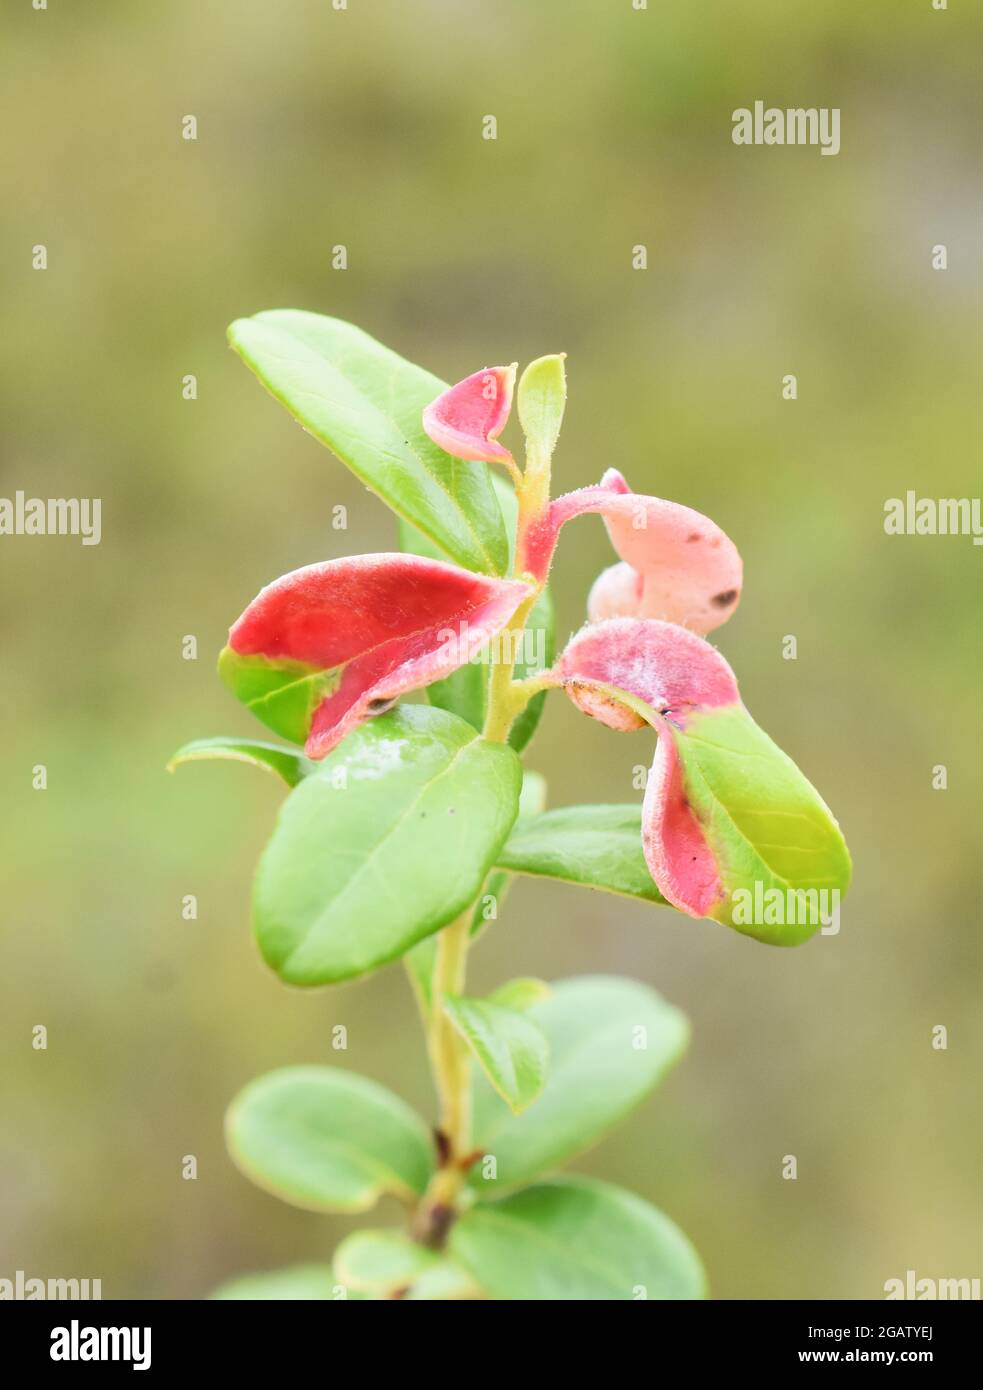 Leaf gall Exobasidium vaccinii on cranberry plant Stock Photo